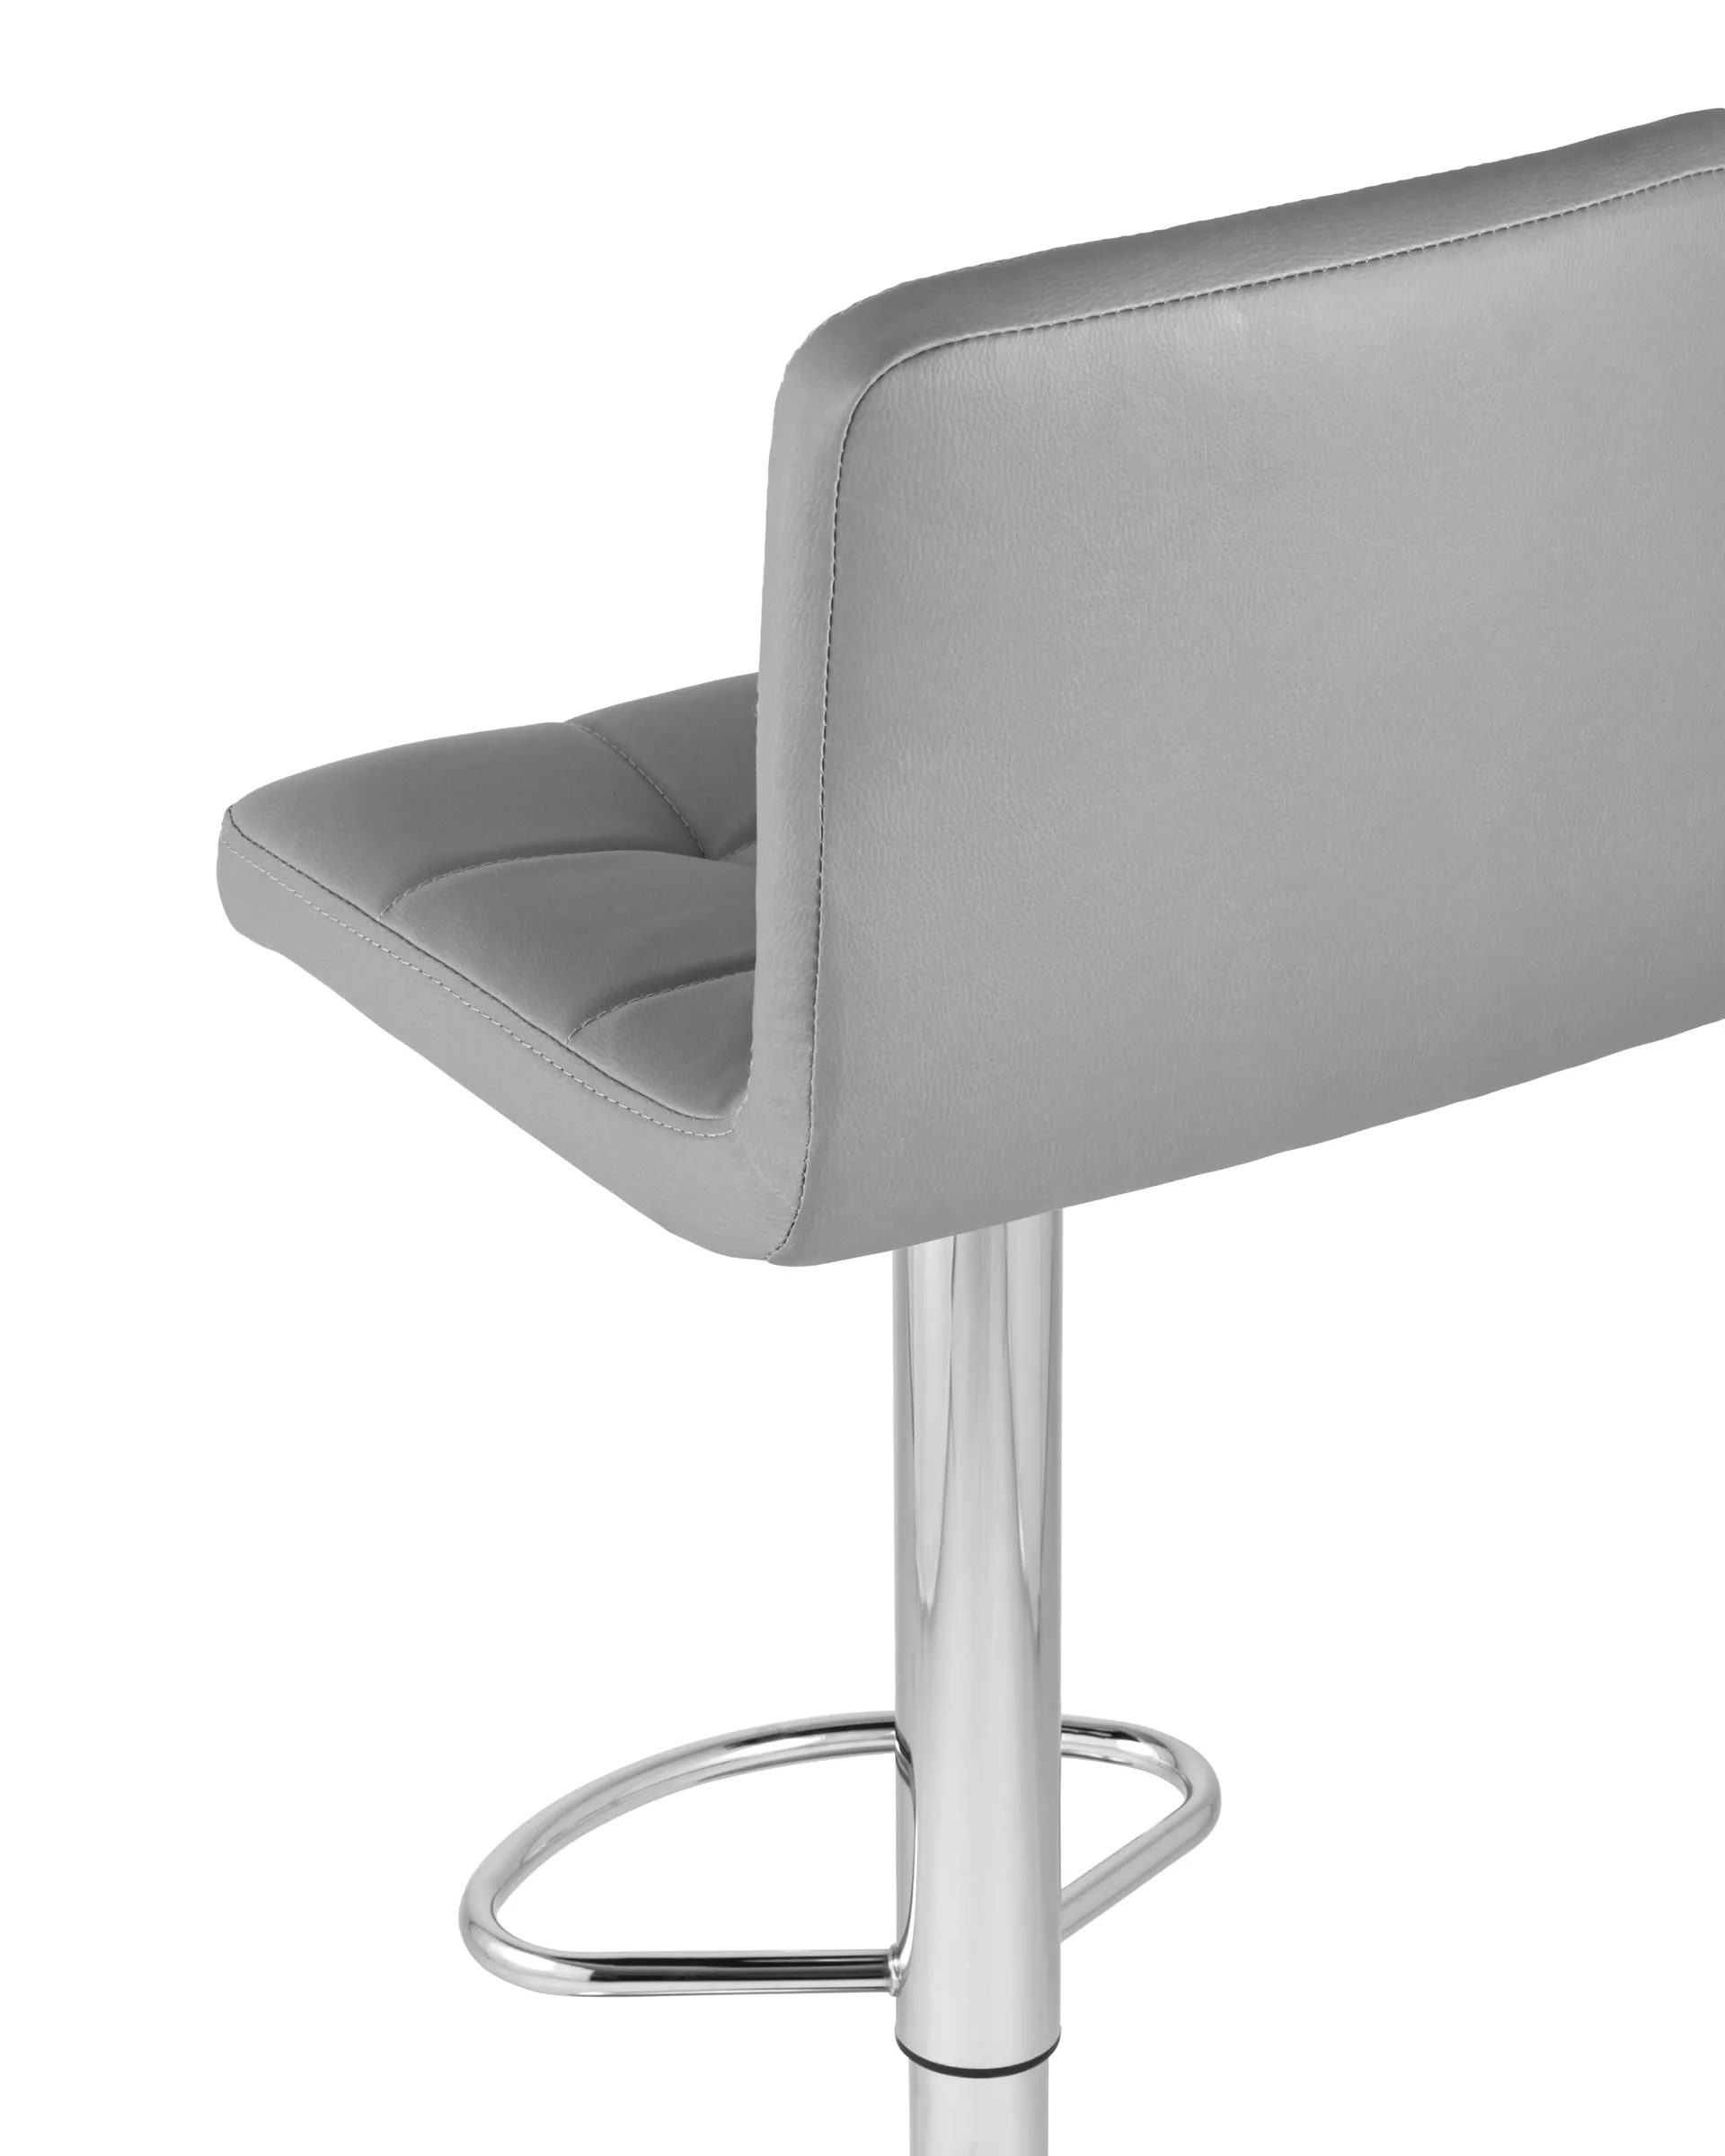 Комплект барных стульев Малави LITE серый NP (2 шт.)